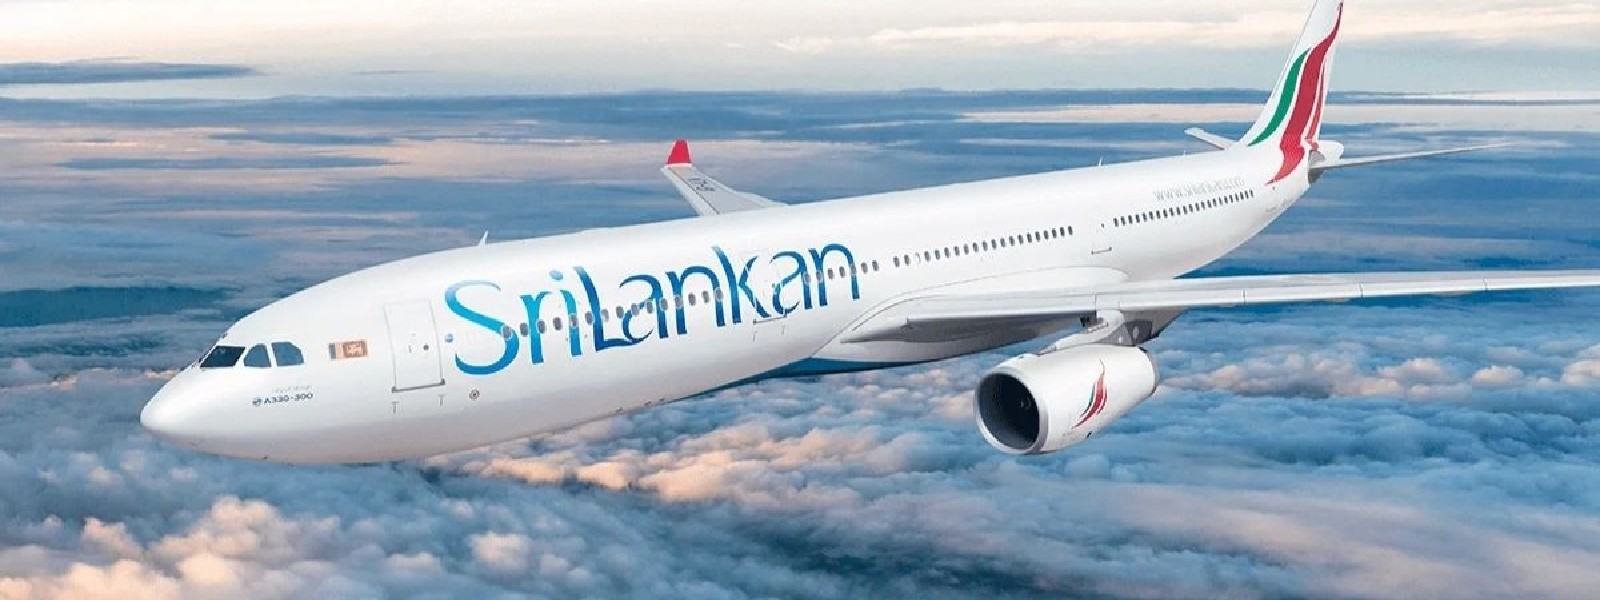 Government Delays SriLankan Airlines Sale, again